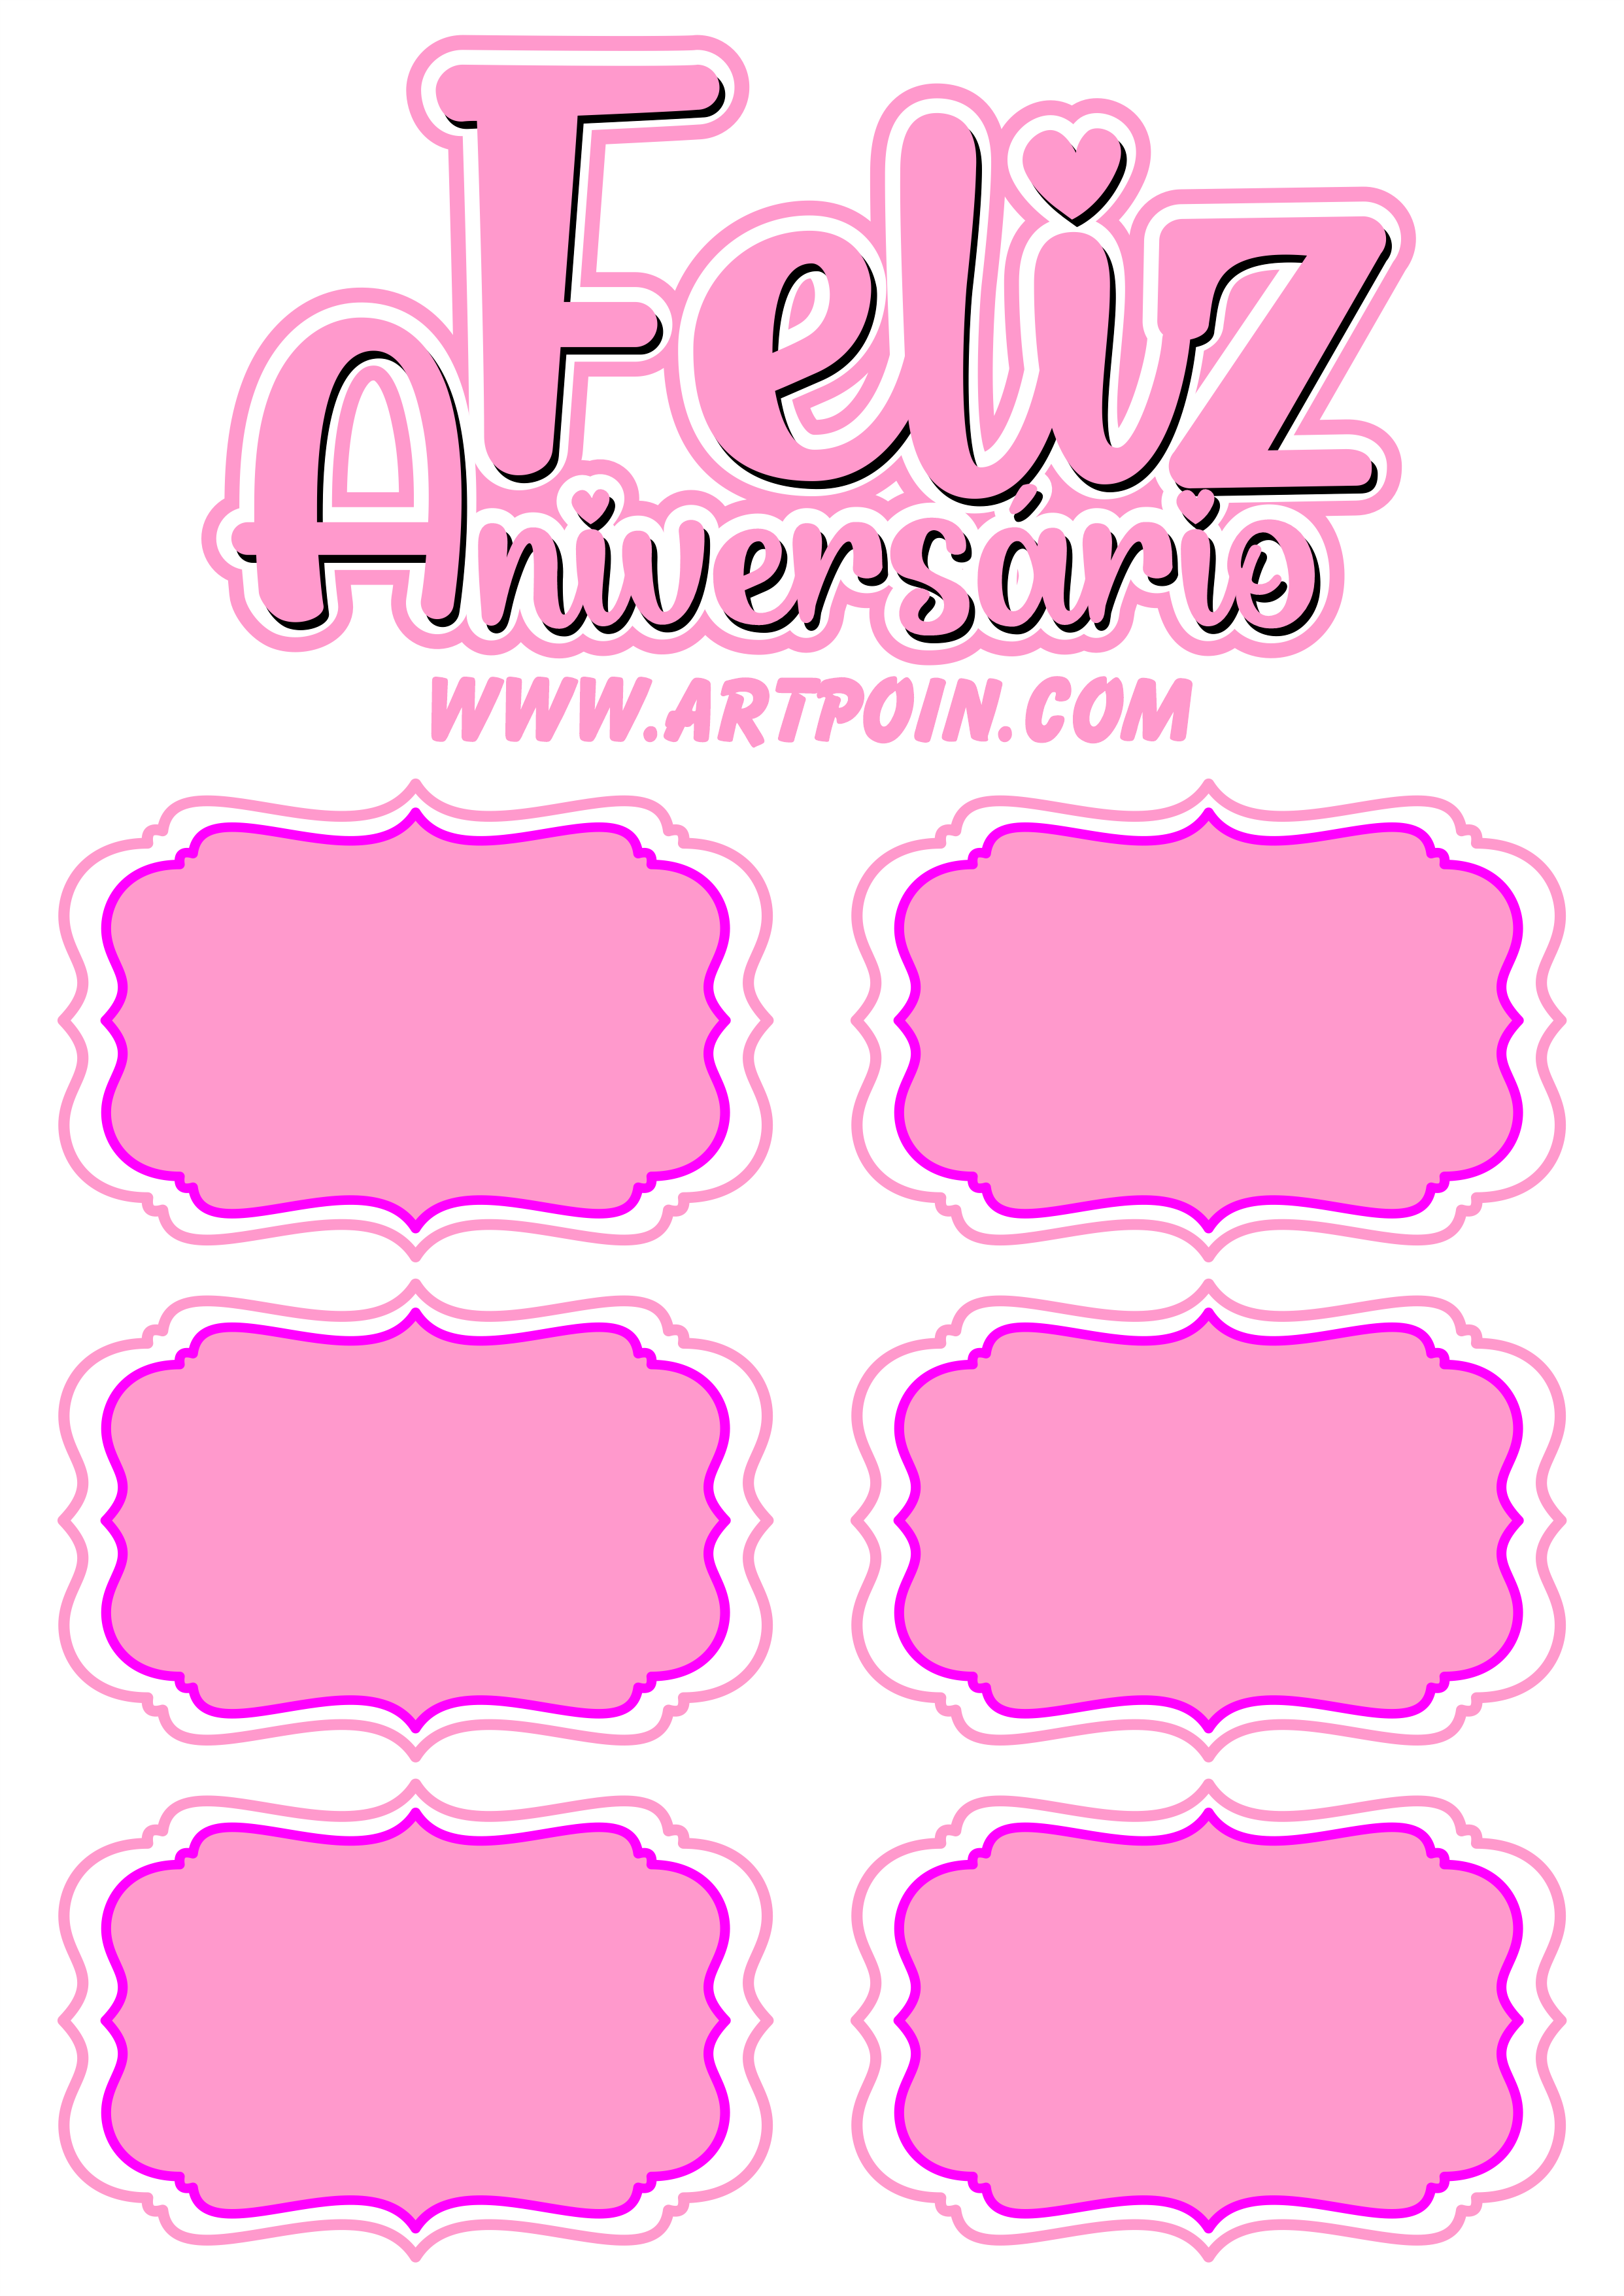 Topo de bolo para baixar feliz aniversário com espaço para frases artigos para festa papelaria criativa rosa pink png